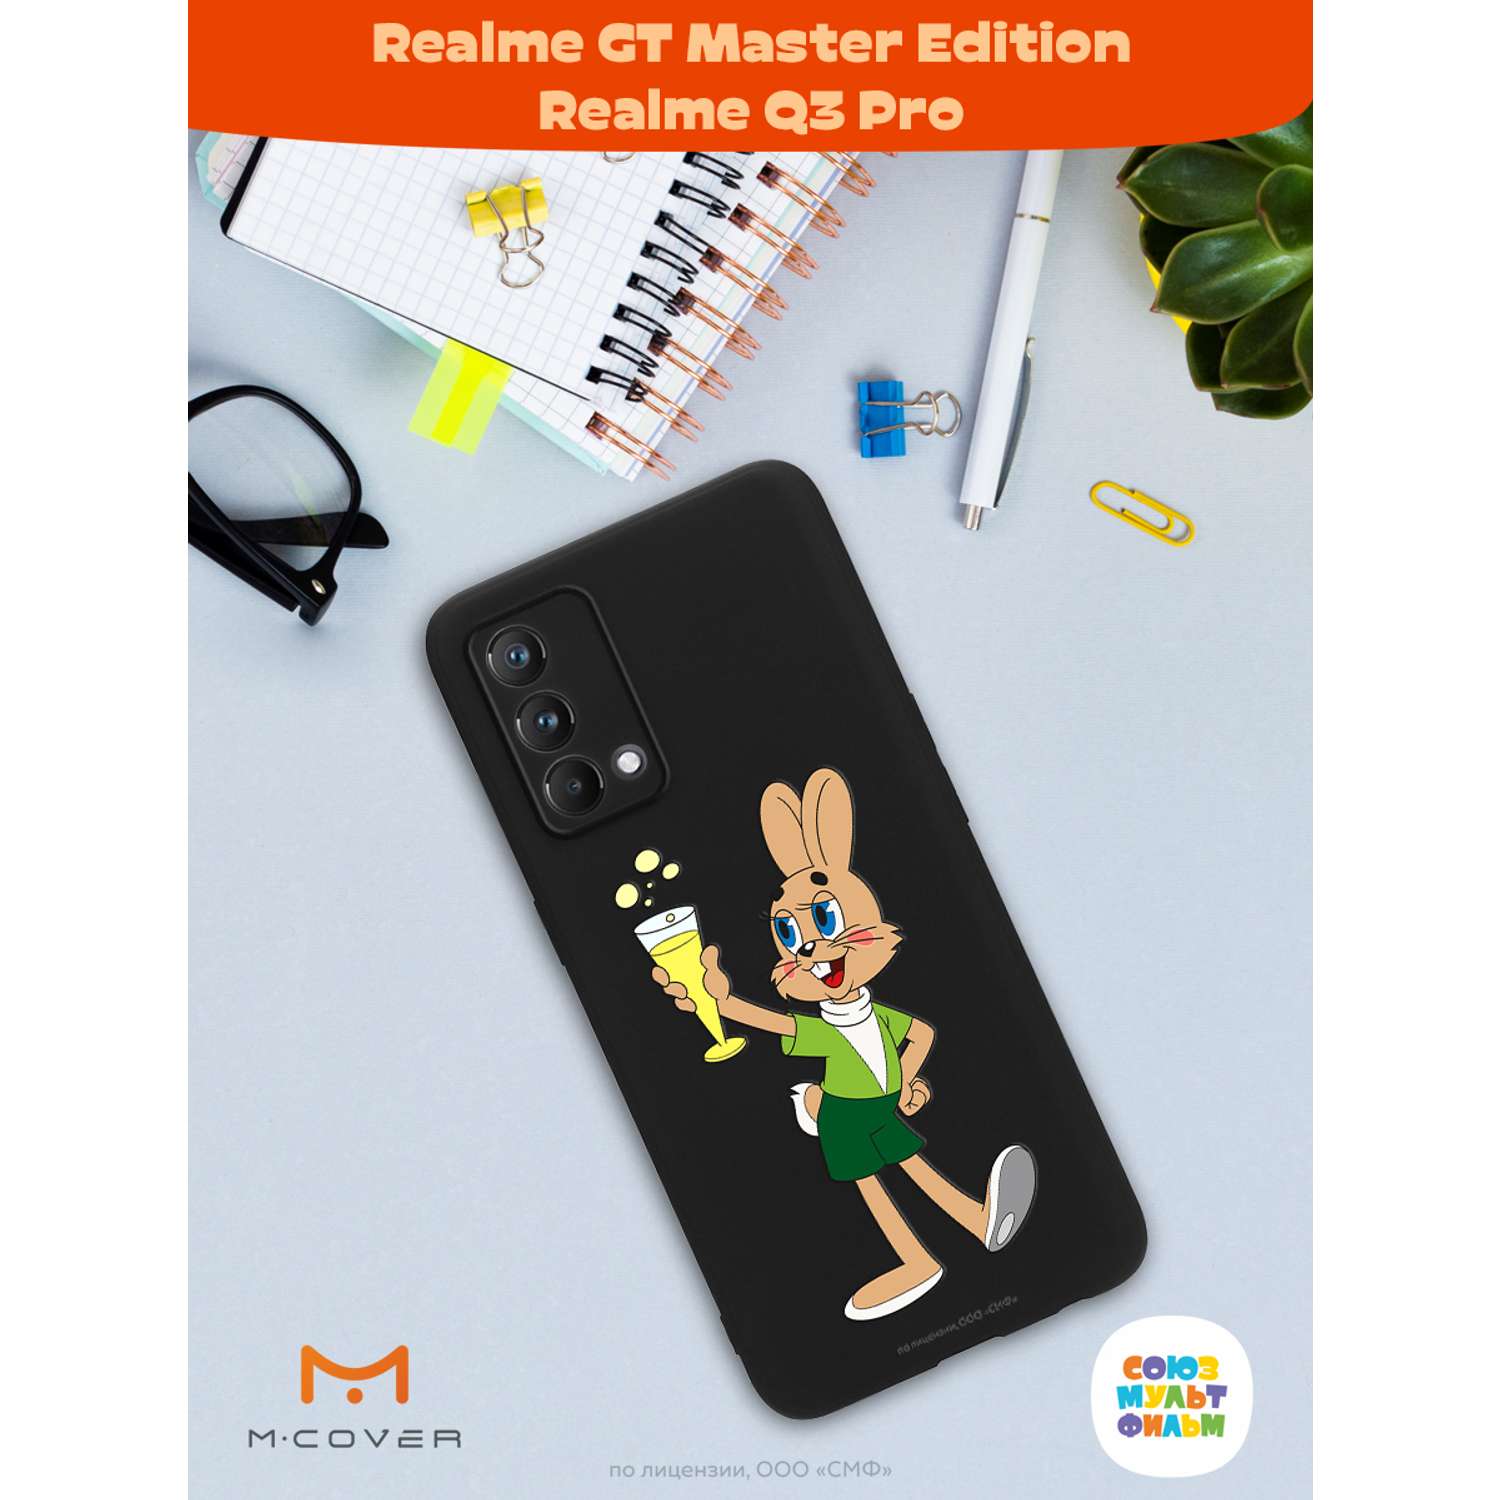 Силиконовый чехол Mcover для смартфона Realme GT Master Edition Q3 Pro Союзмультфильм Заяц с шампанским - фото 3